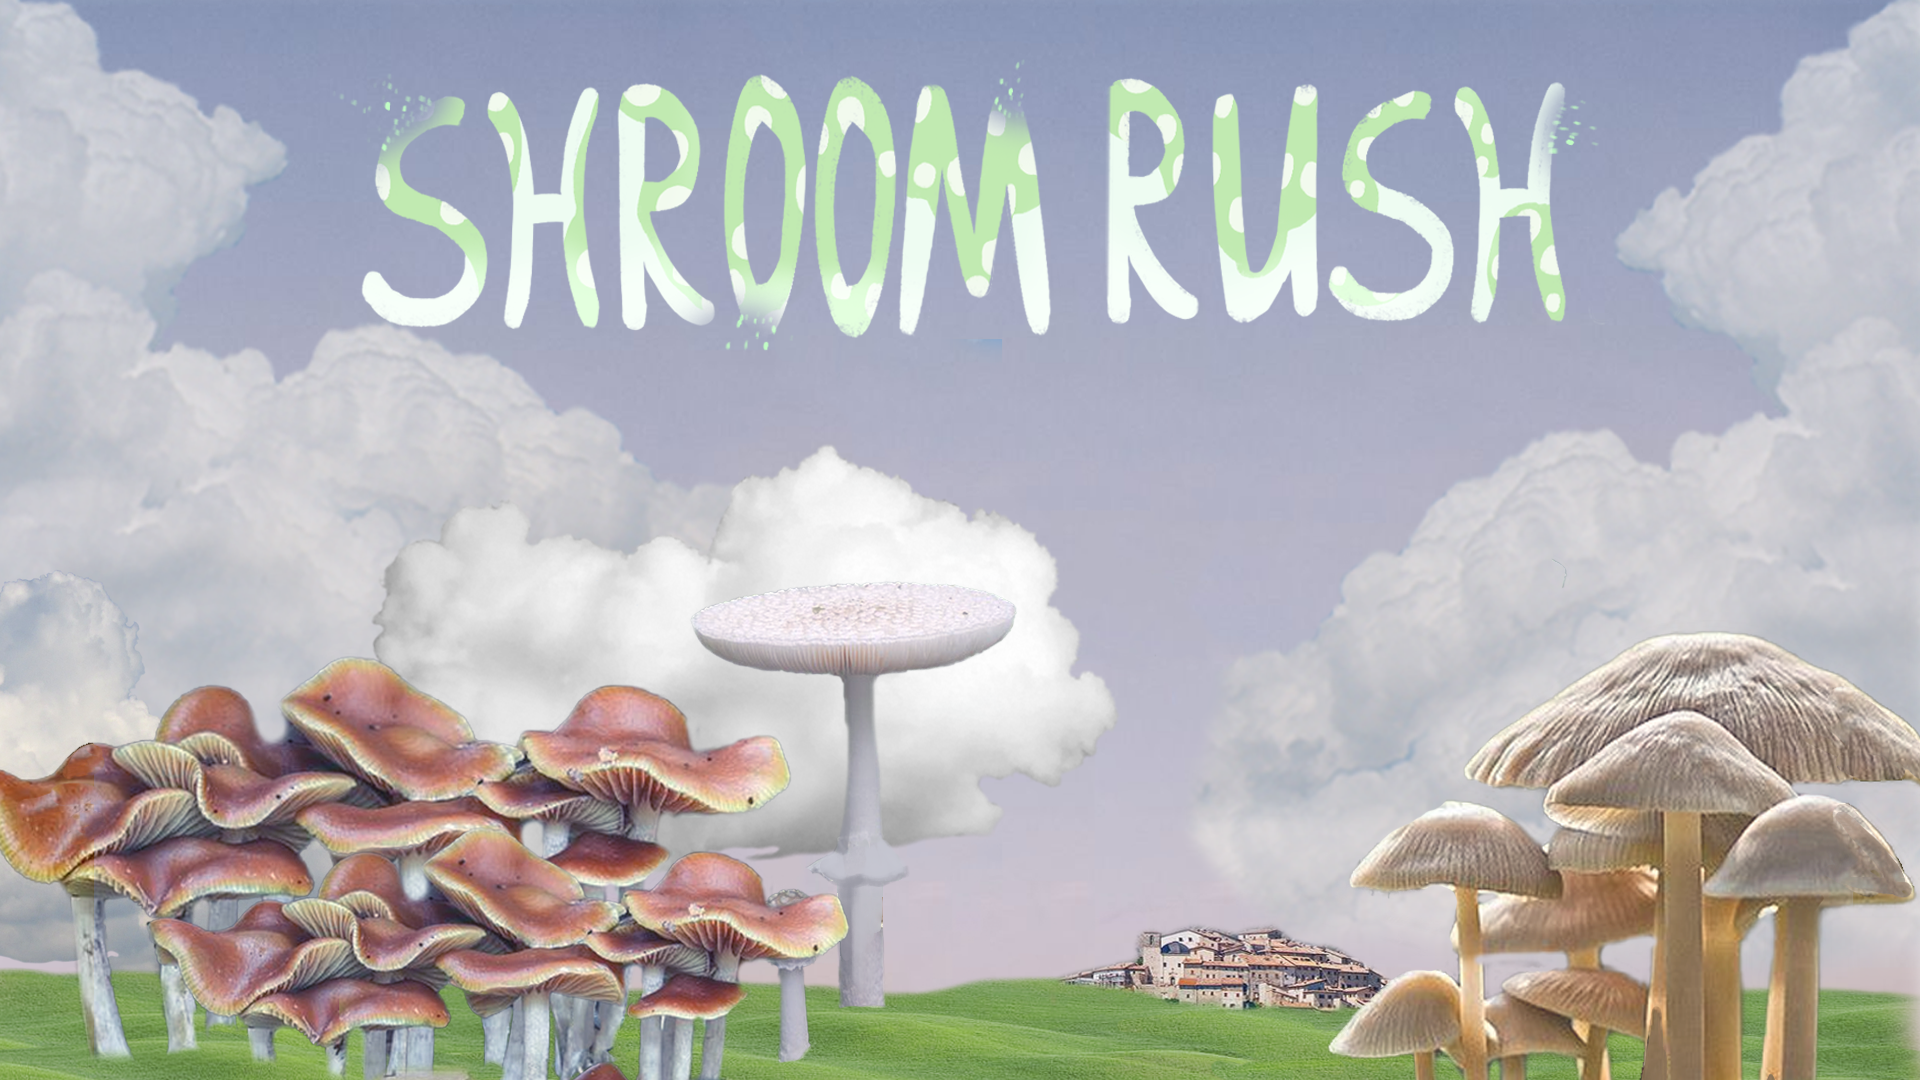 Shroom rush